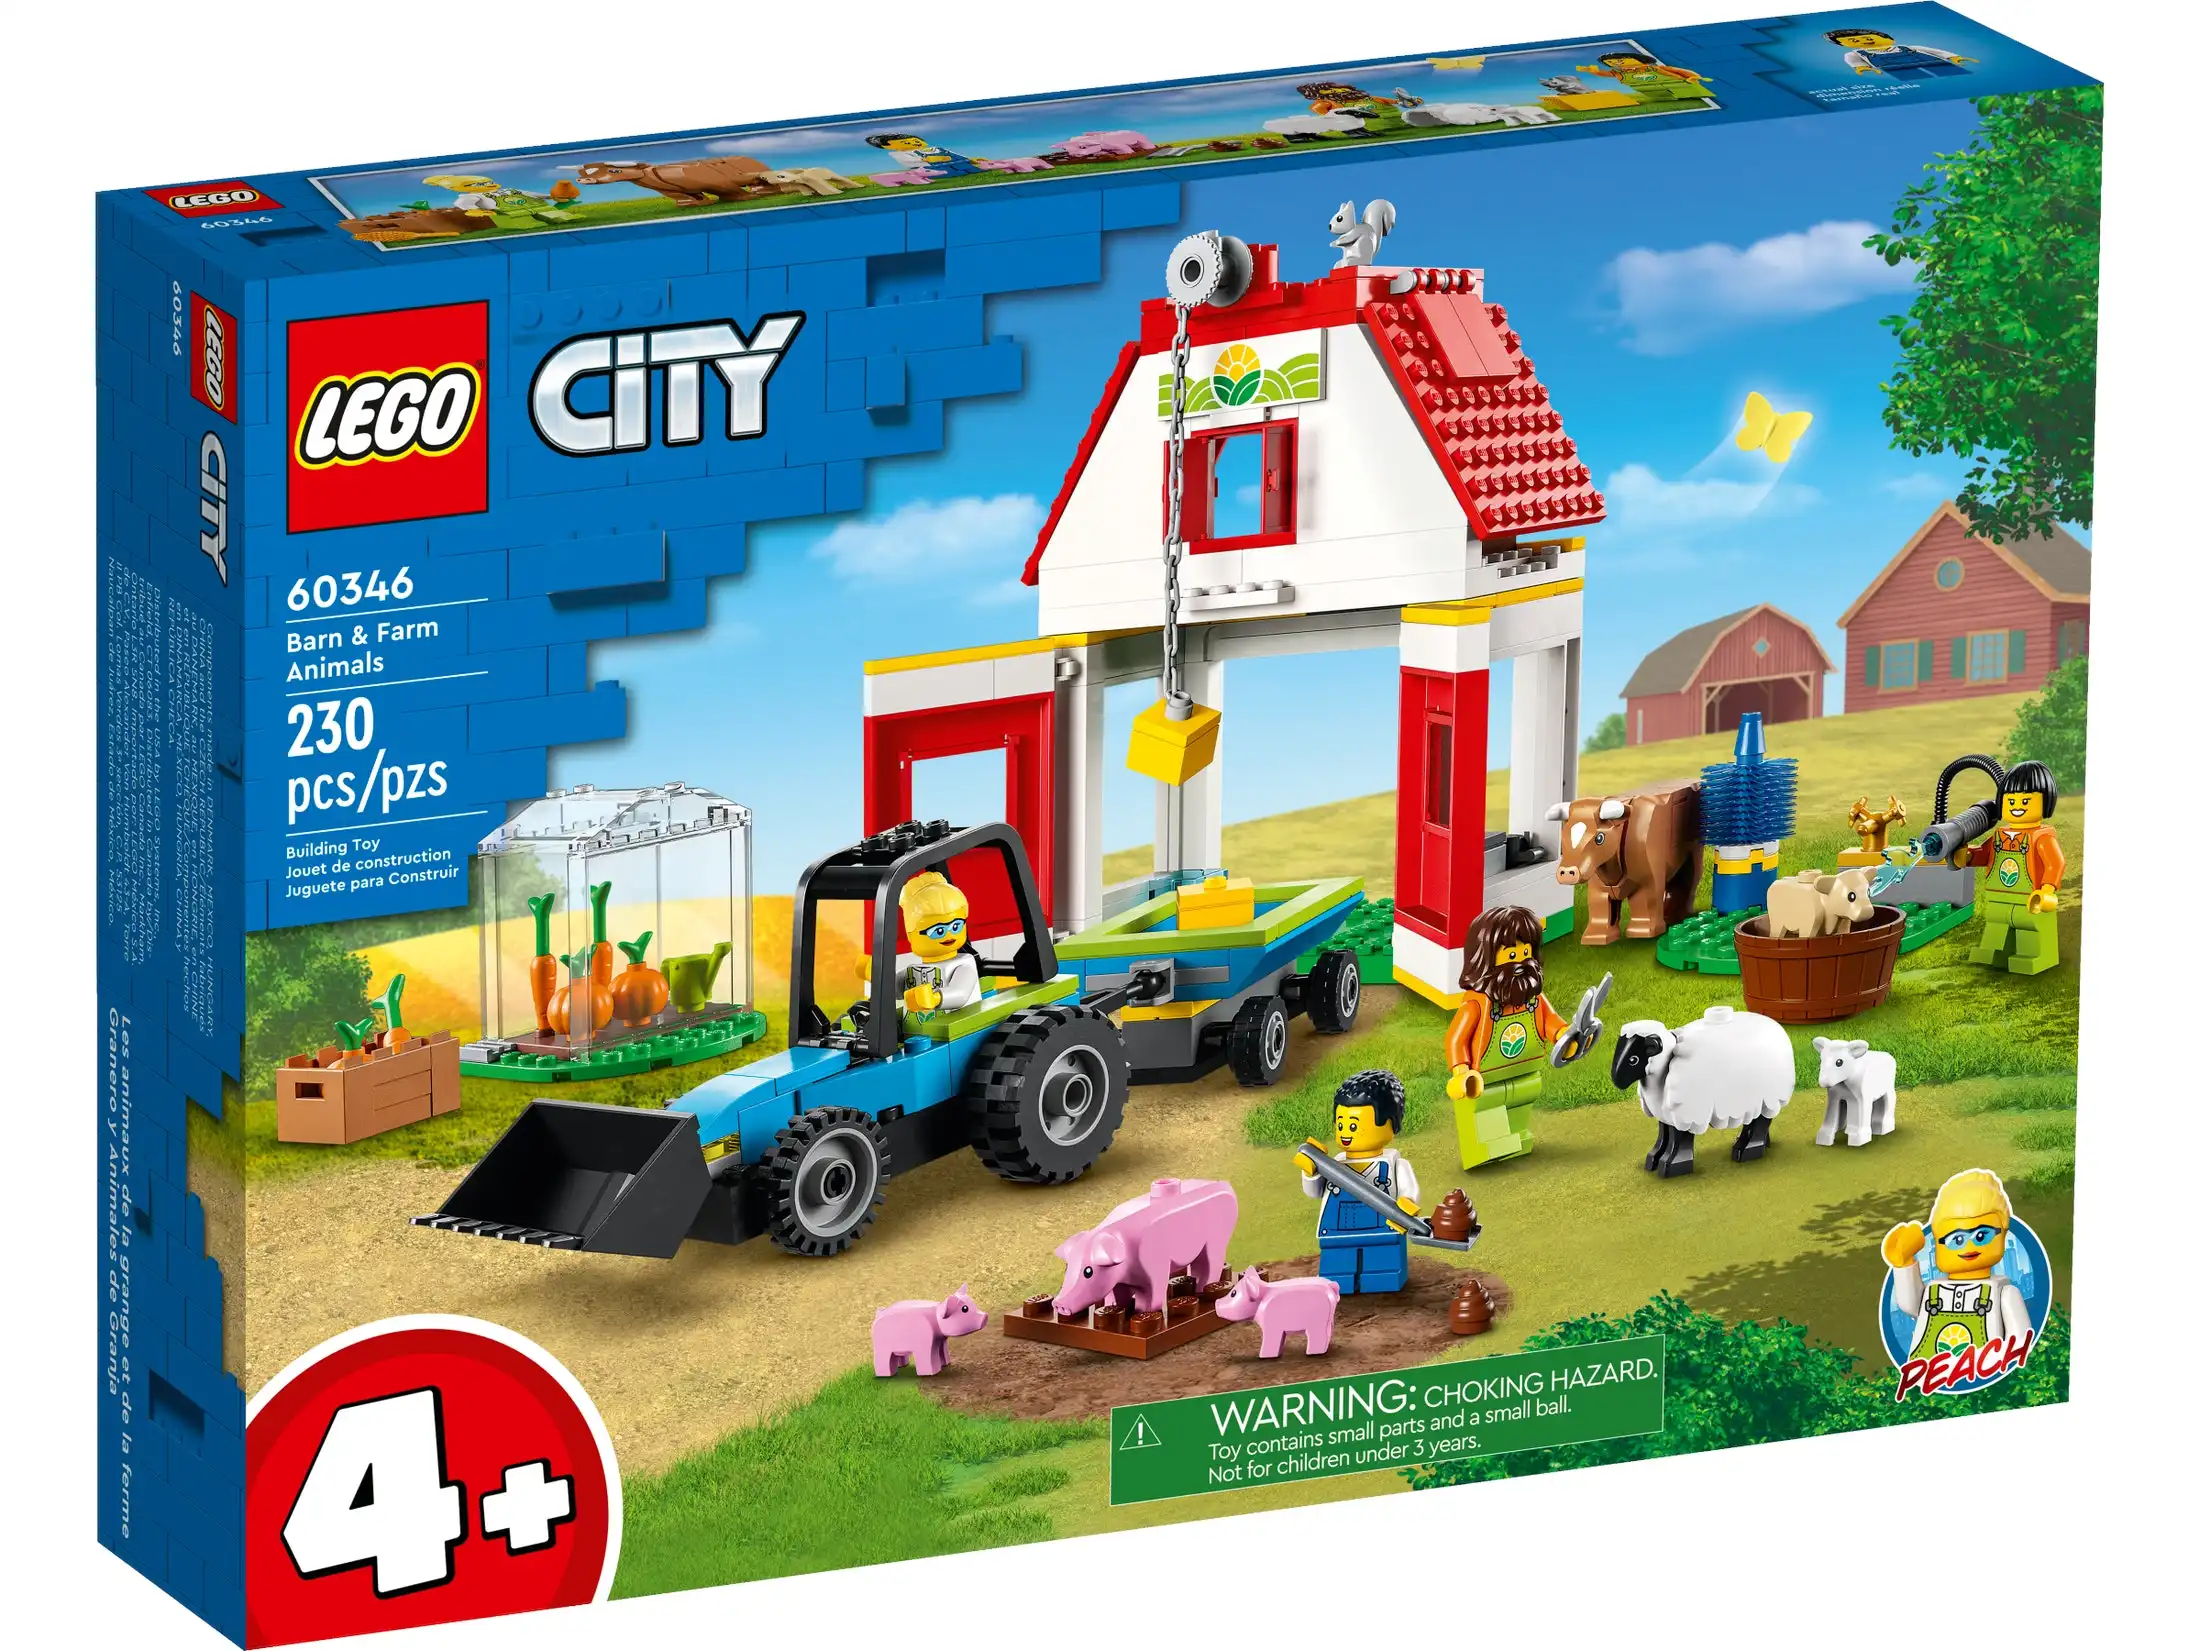 LEGO 60346 Barn & Farm Animals - City Farm 4+